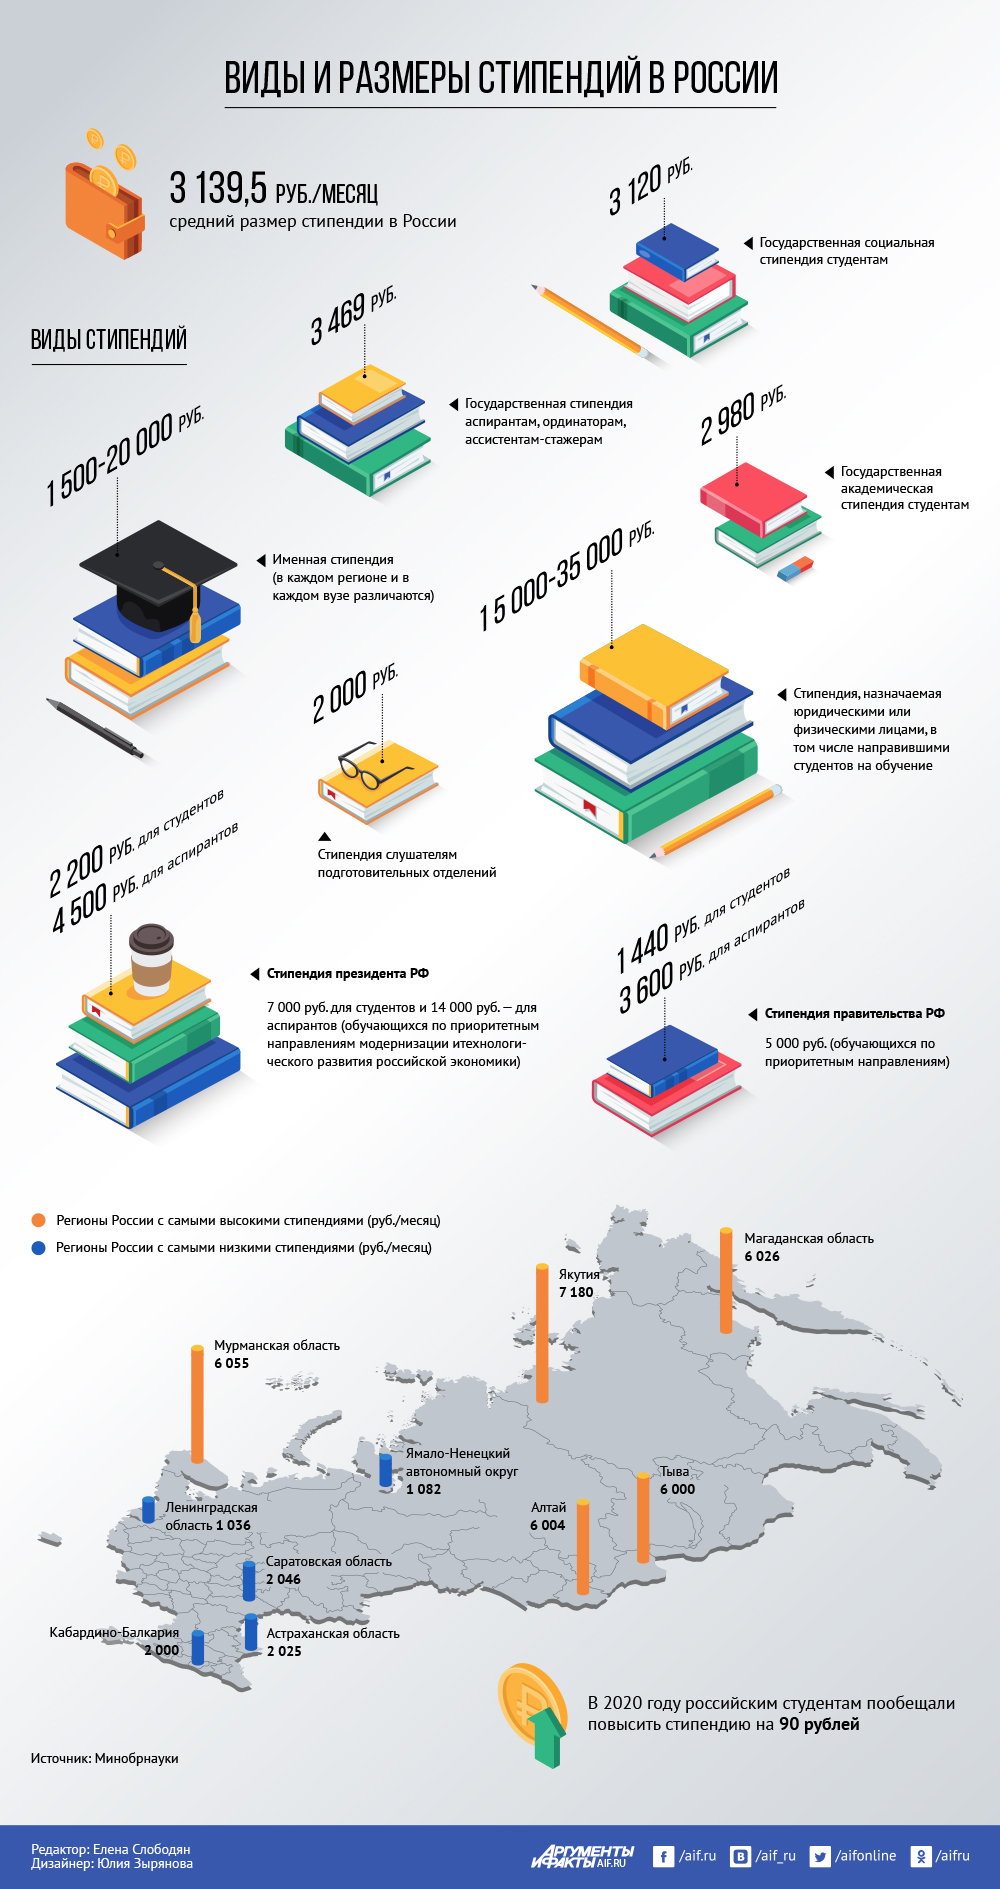 средняя стипендия в россии 2021